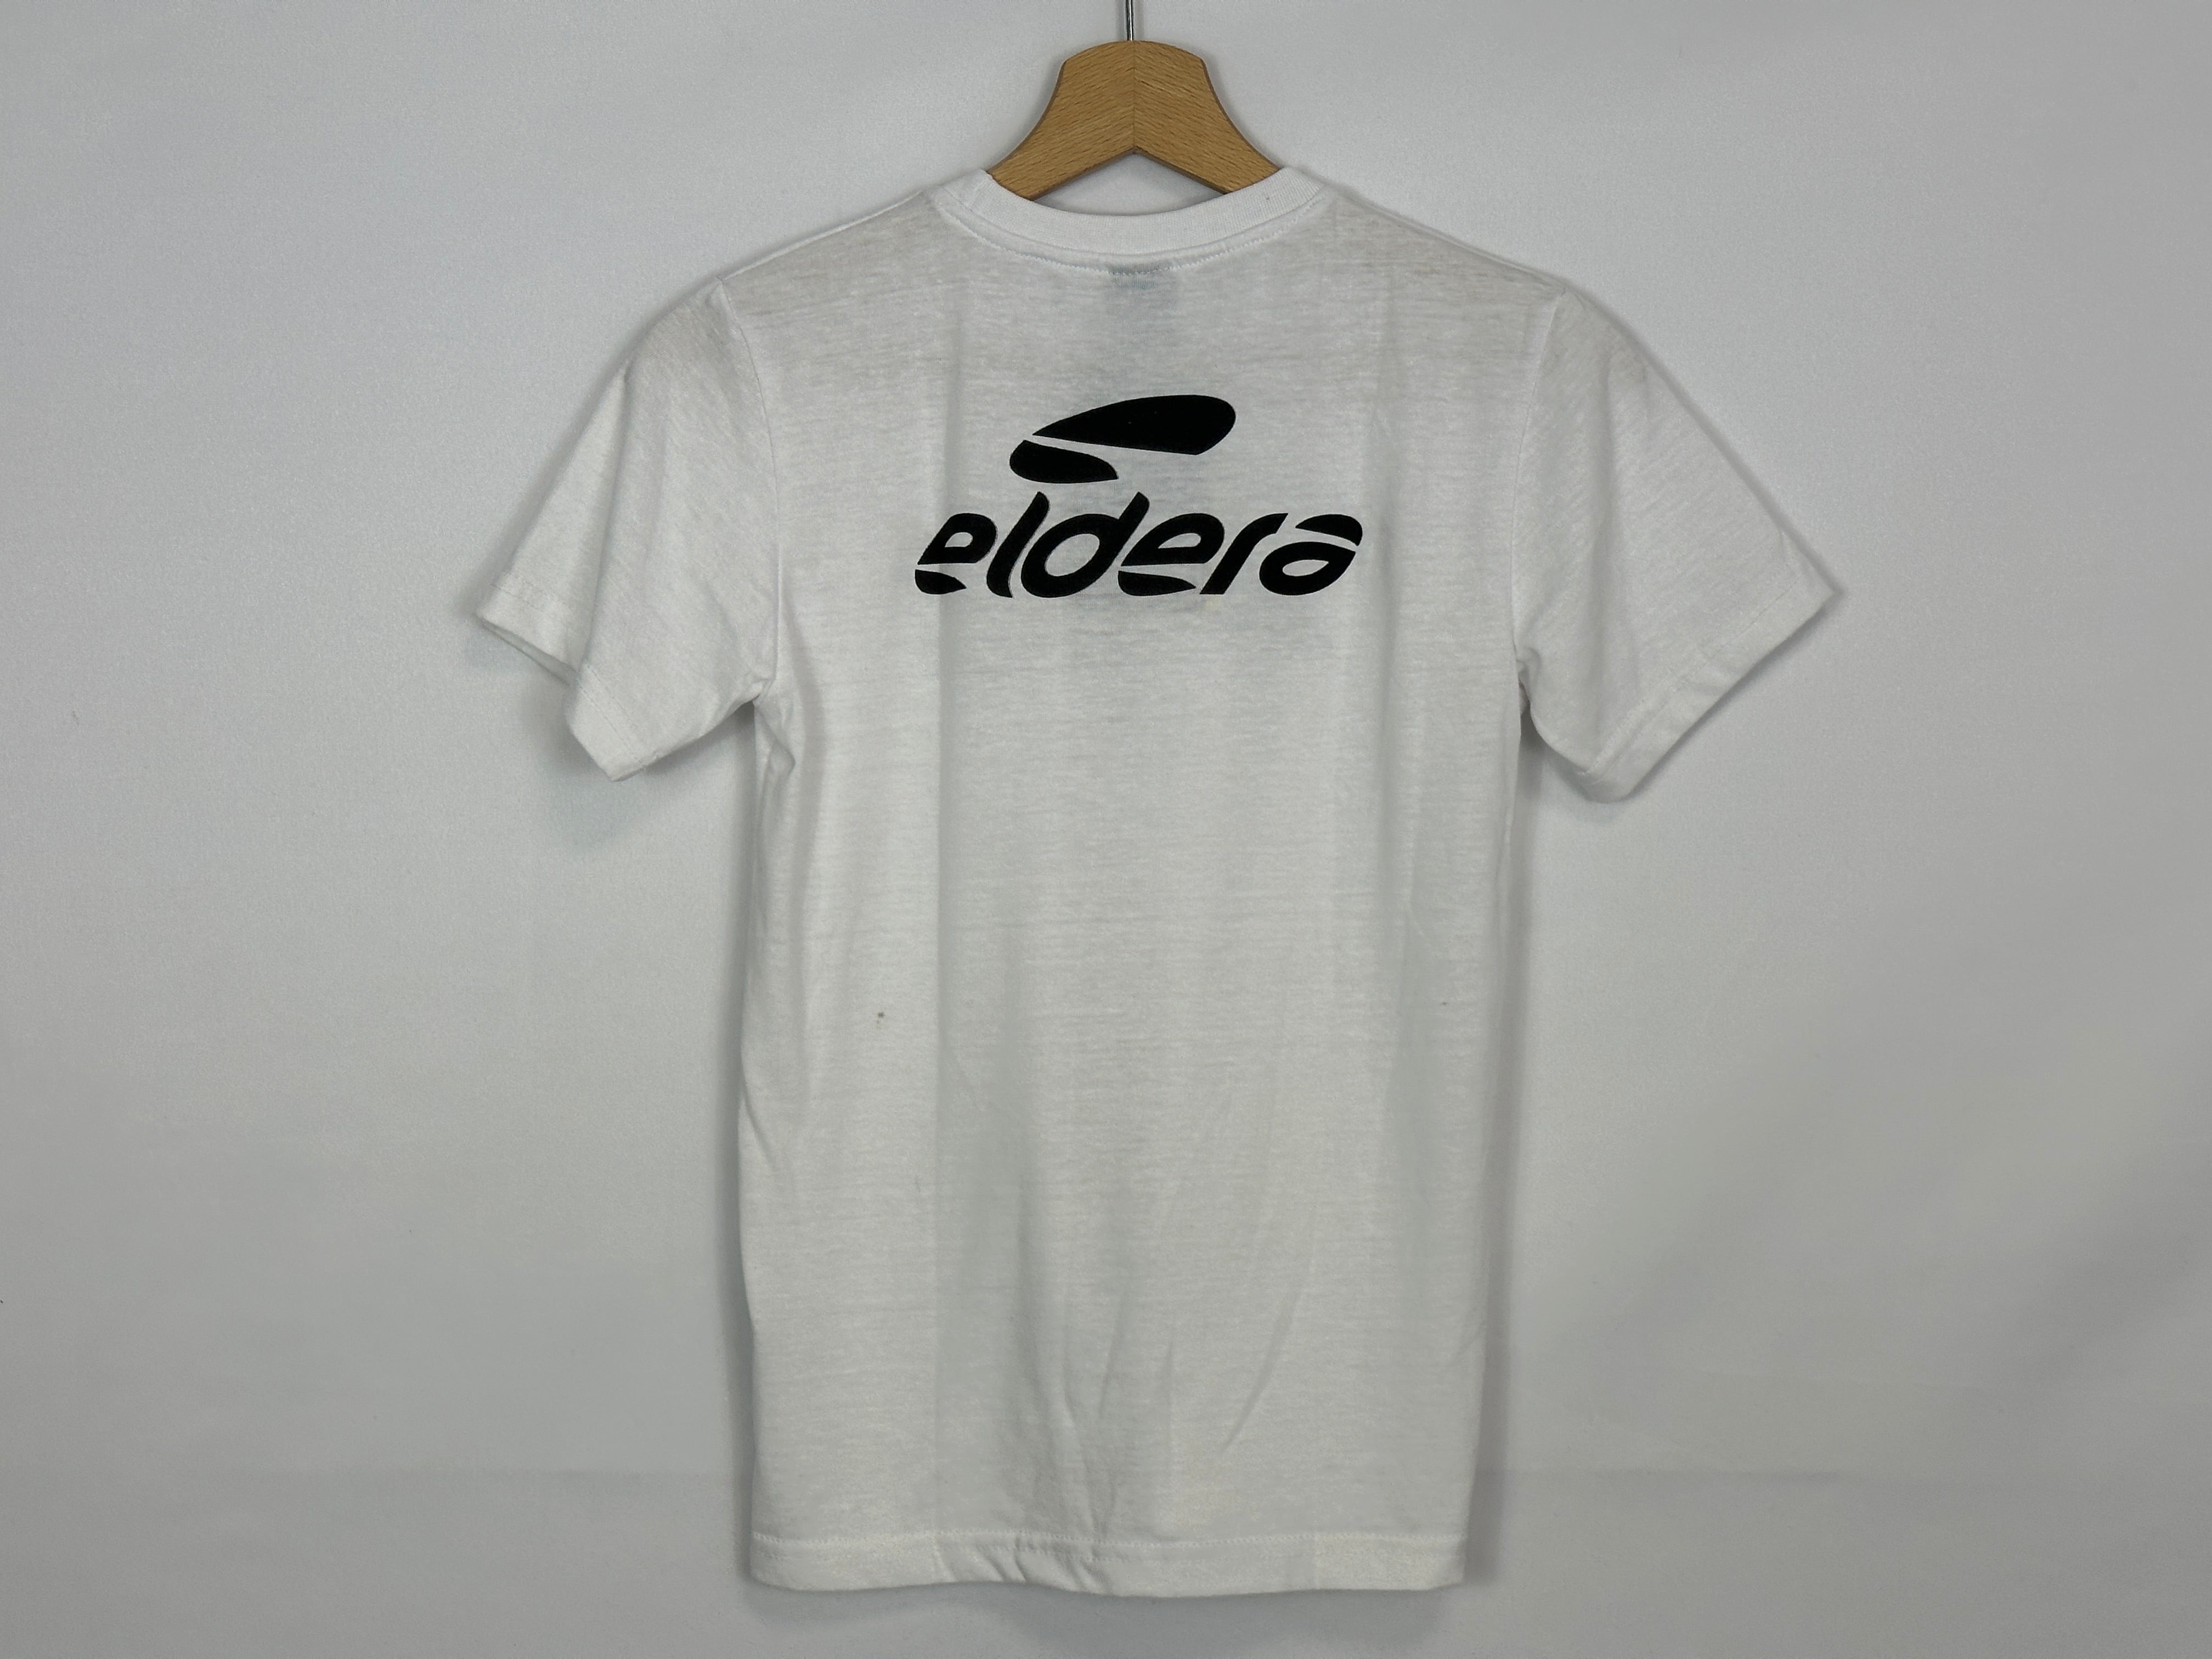 FDJ Ciclismo - Camiseta de Eldera